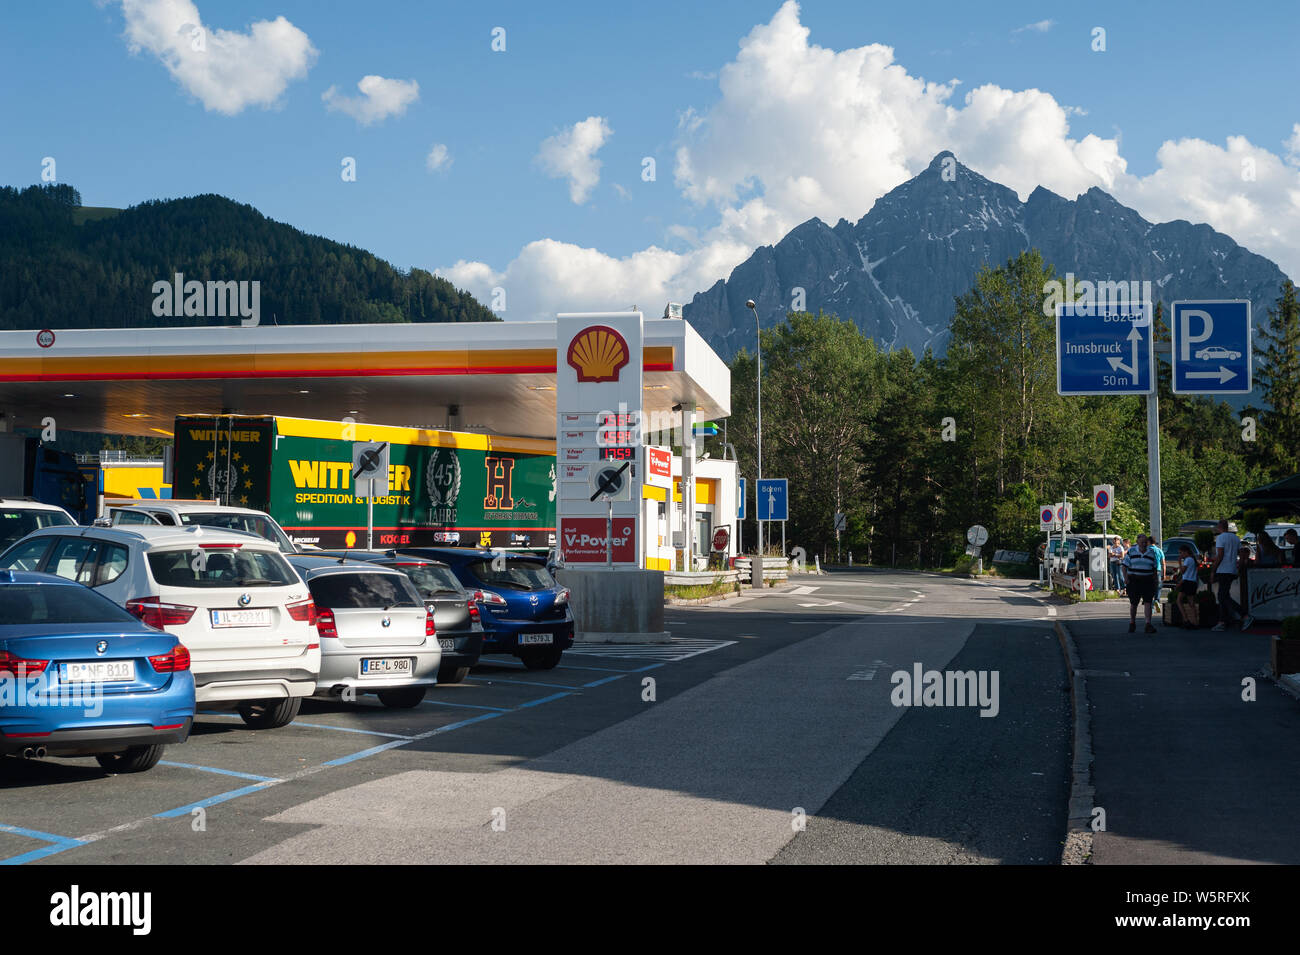 19.06.2019, Schoenberg, Tirolo, Austria, Europa - stazione di servizio a Stubaital lungo l'autostrada del Brennero autostrada con una vista delle Alpi. Foto Stock